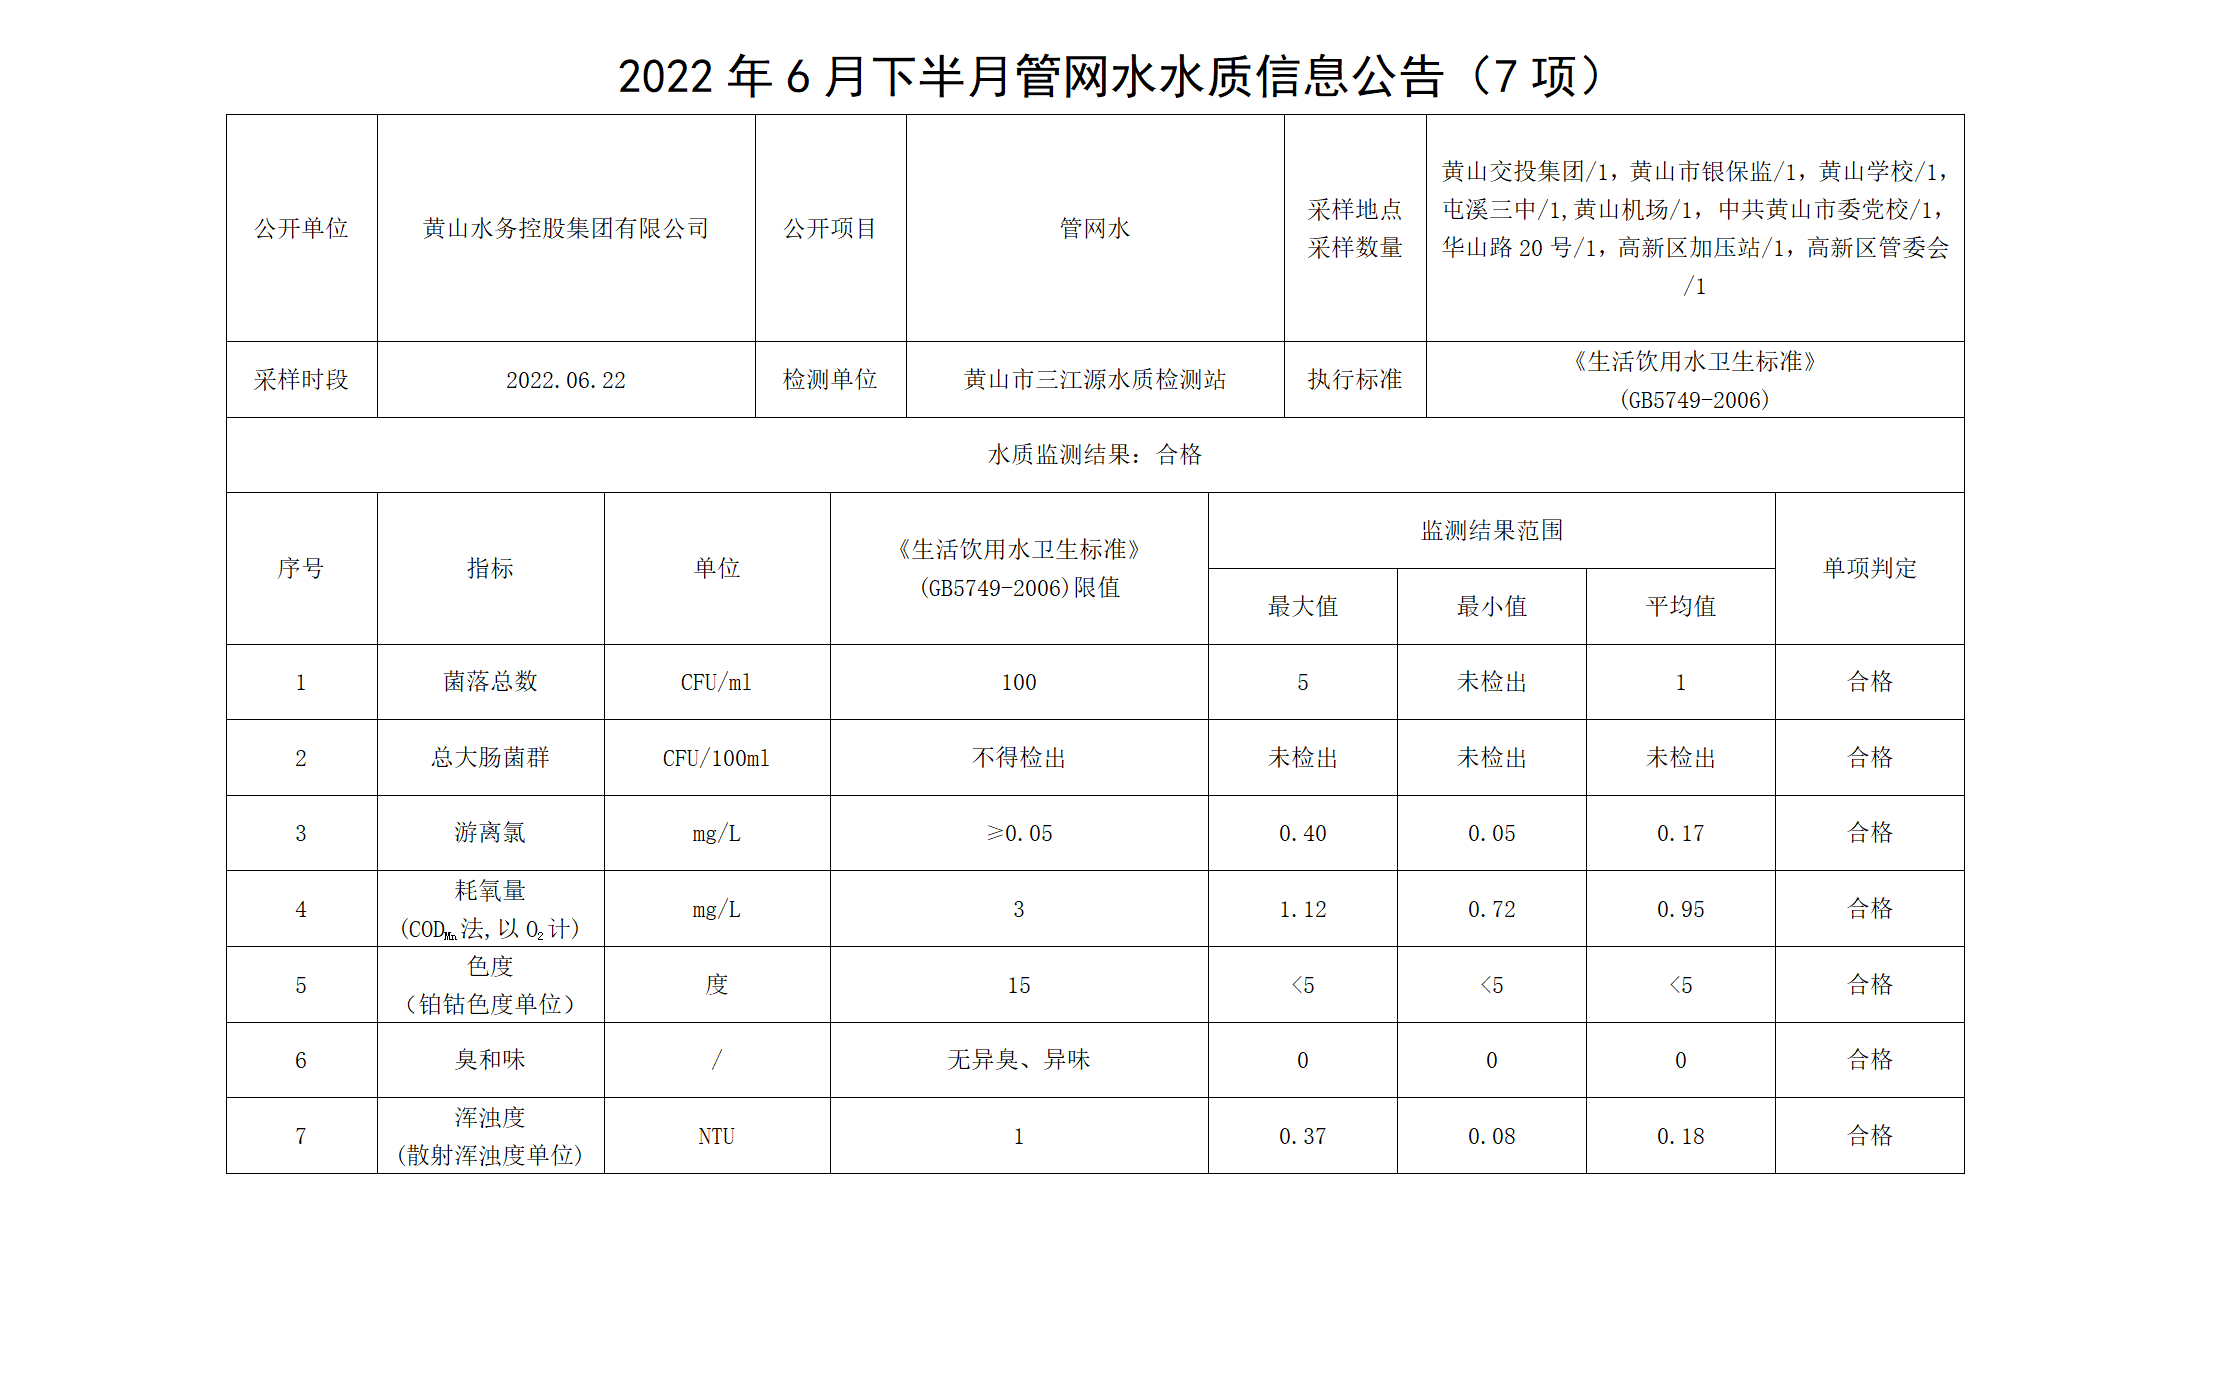 2022年6月下半月管网水水质信息公告（7项）_01.png